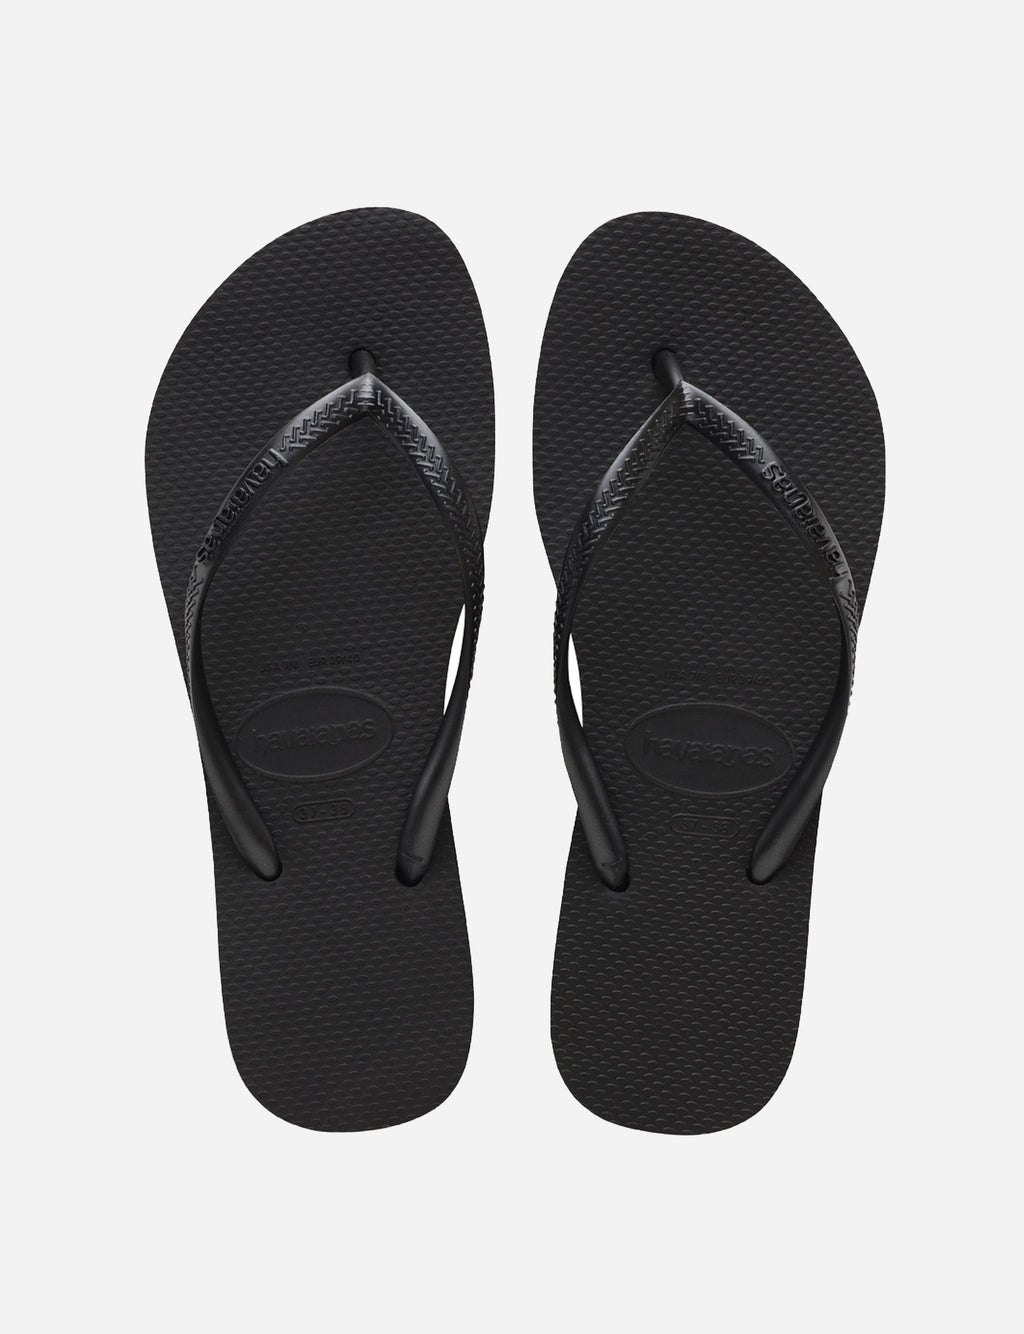 Havaianas Slim Flatform Sandal in Black